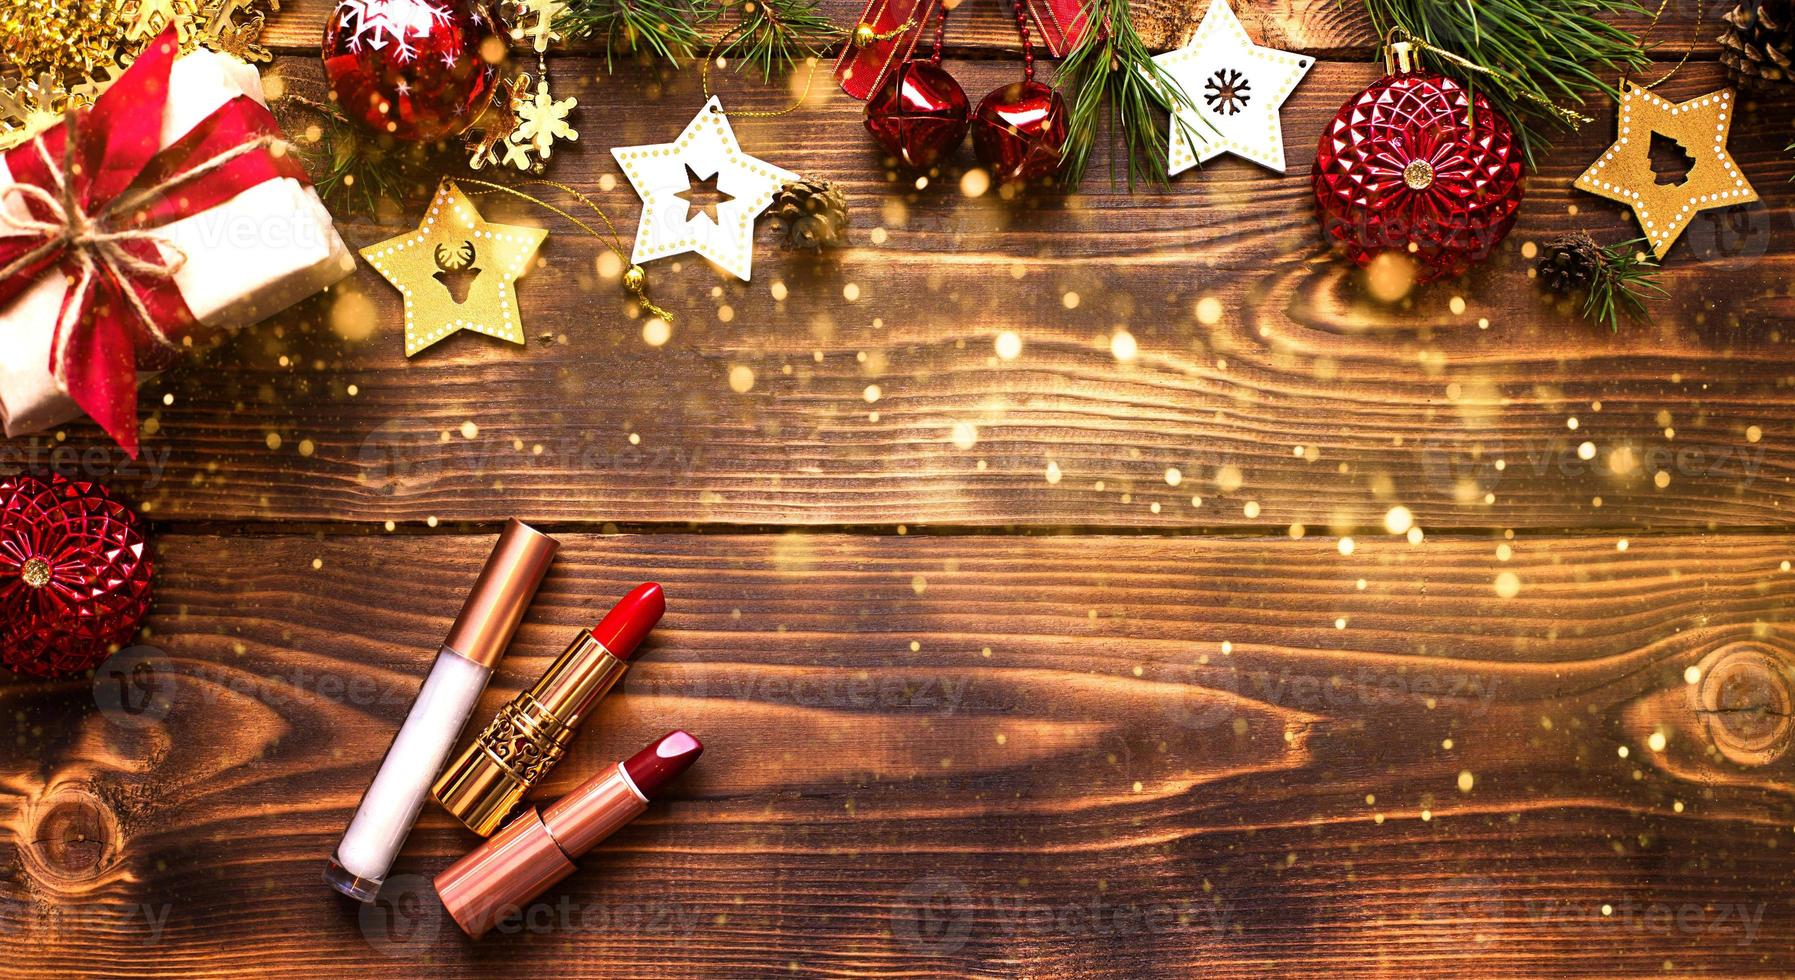 rossetto rosso e lucidalabbra e palpebre su uno sfondo di legno nell'arredamento natalizio. trucco per le vacanze per il nuovo anno, regalo, shopping, desideri delle donne. spazio per il testo, disposizione piatta foto